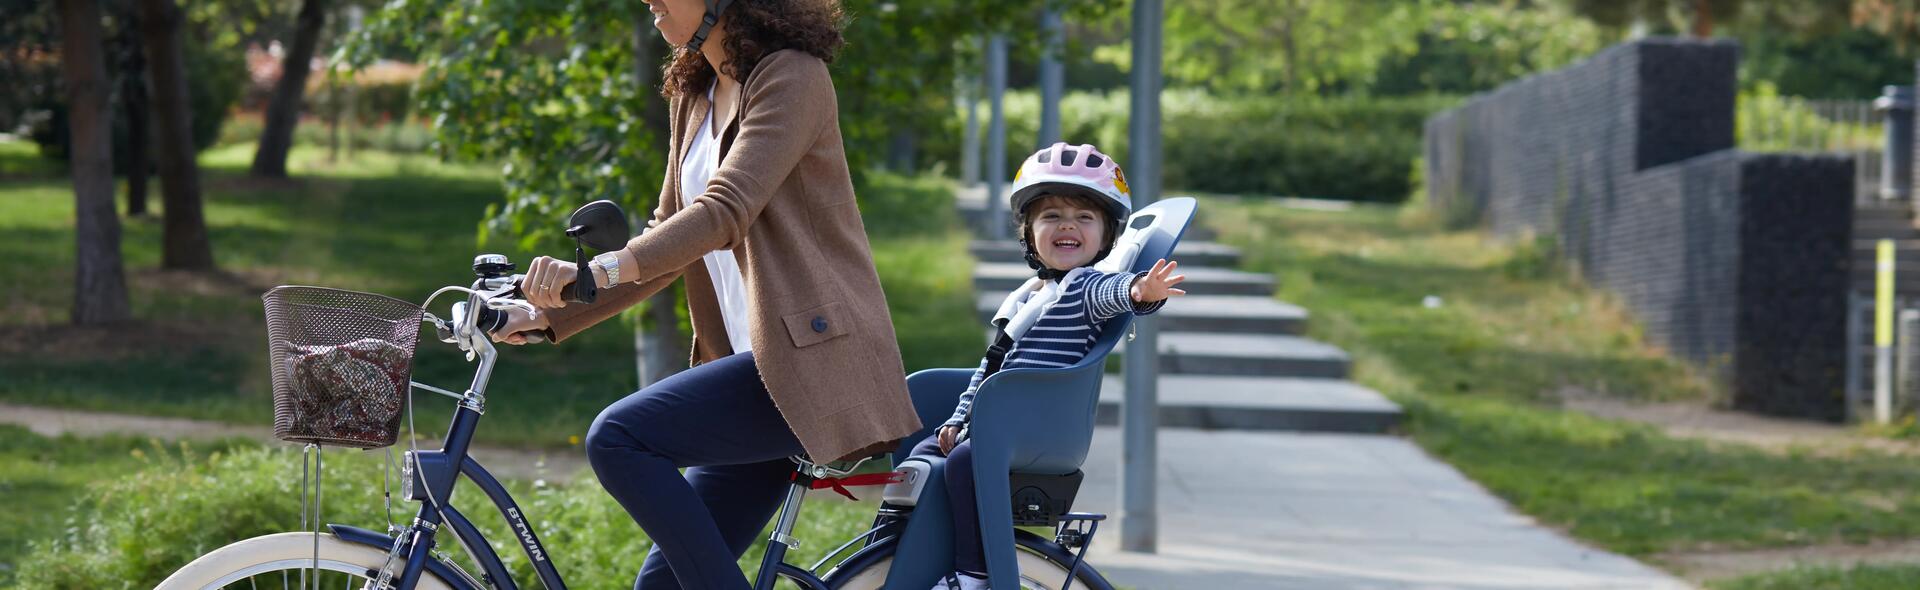 kobieta jadąca na rowerze z  dzieckiem foteliku rowerowym